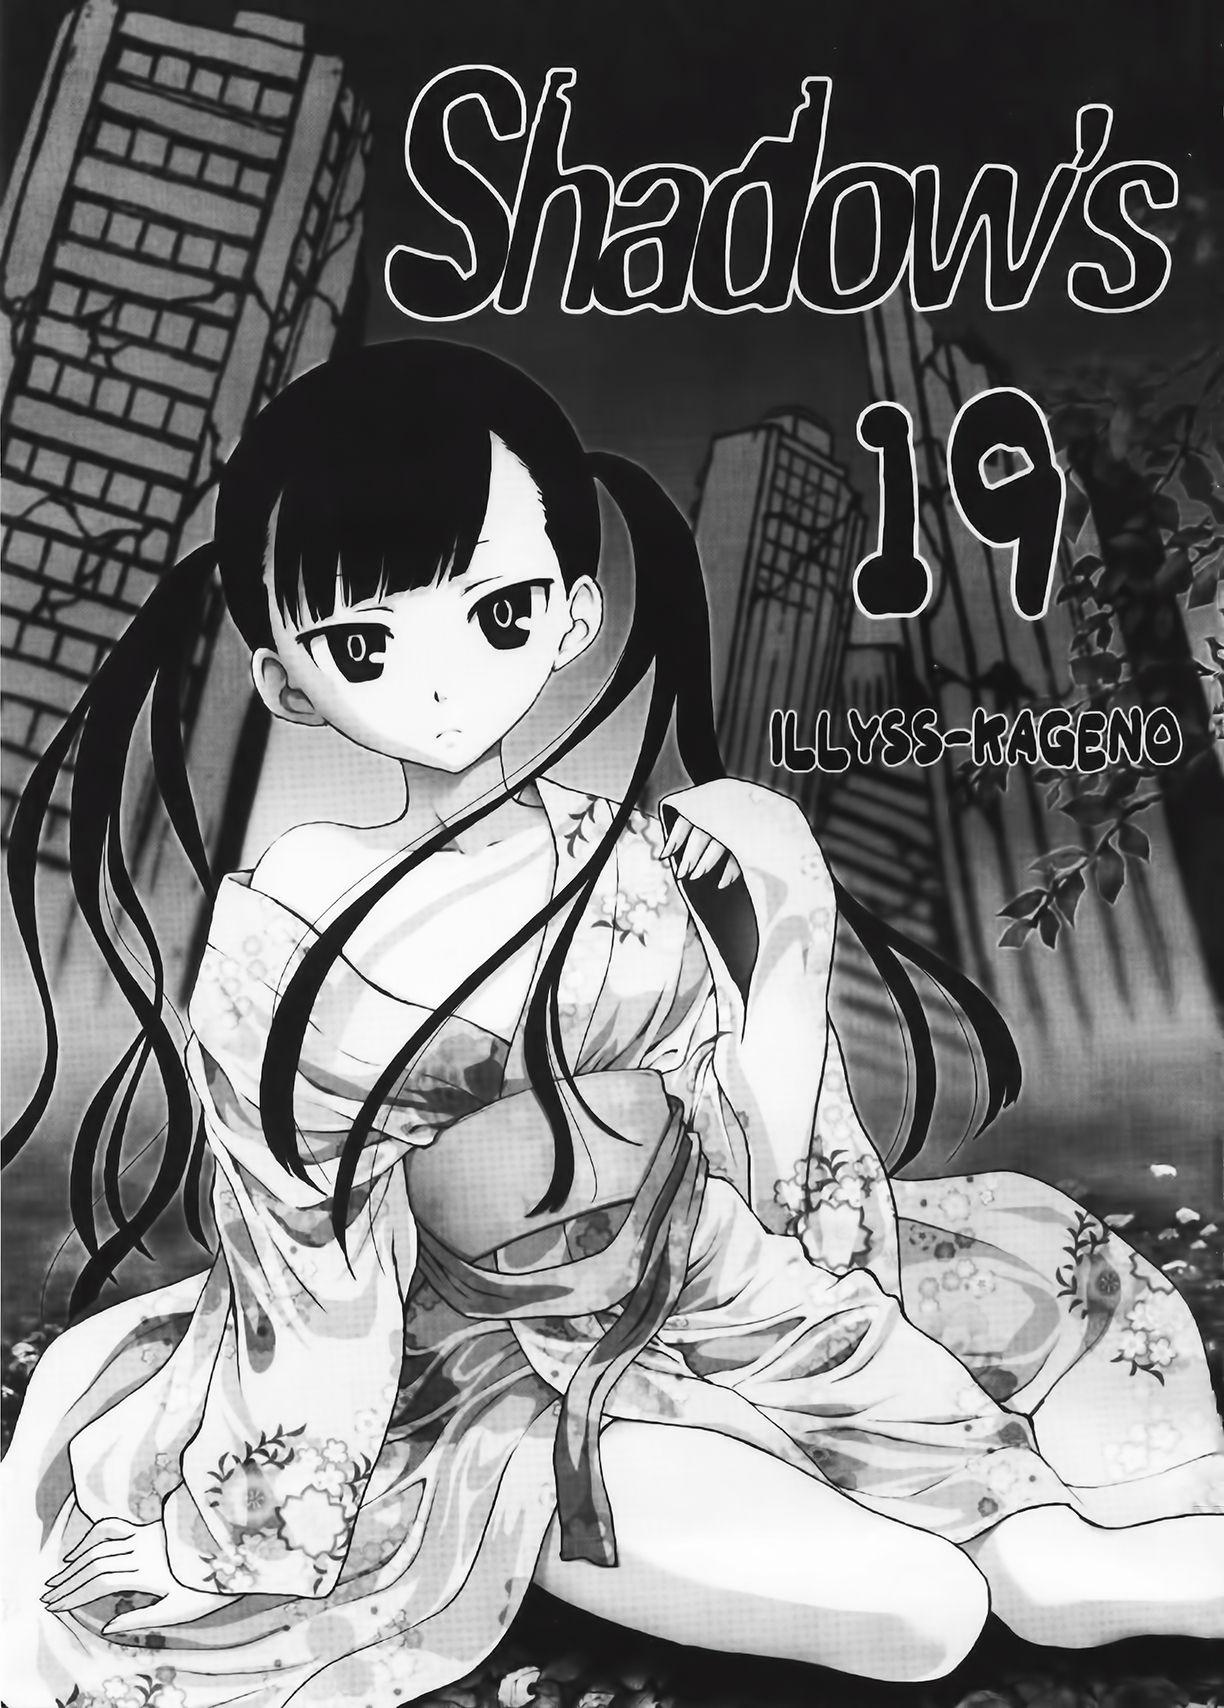 American Shadows 19 - Un go Blows - Page 3